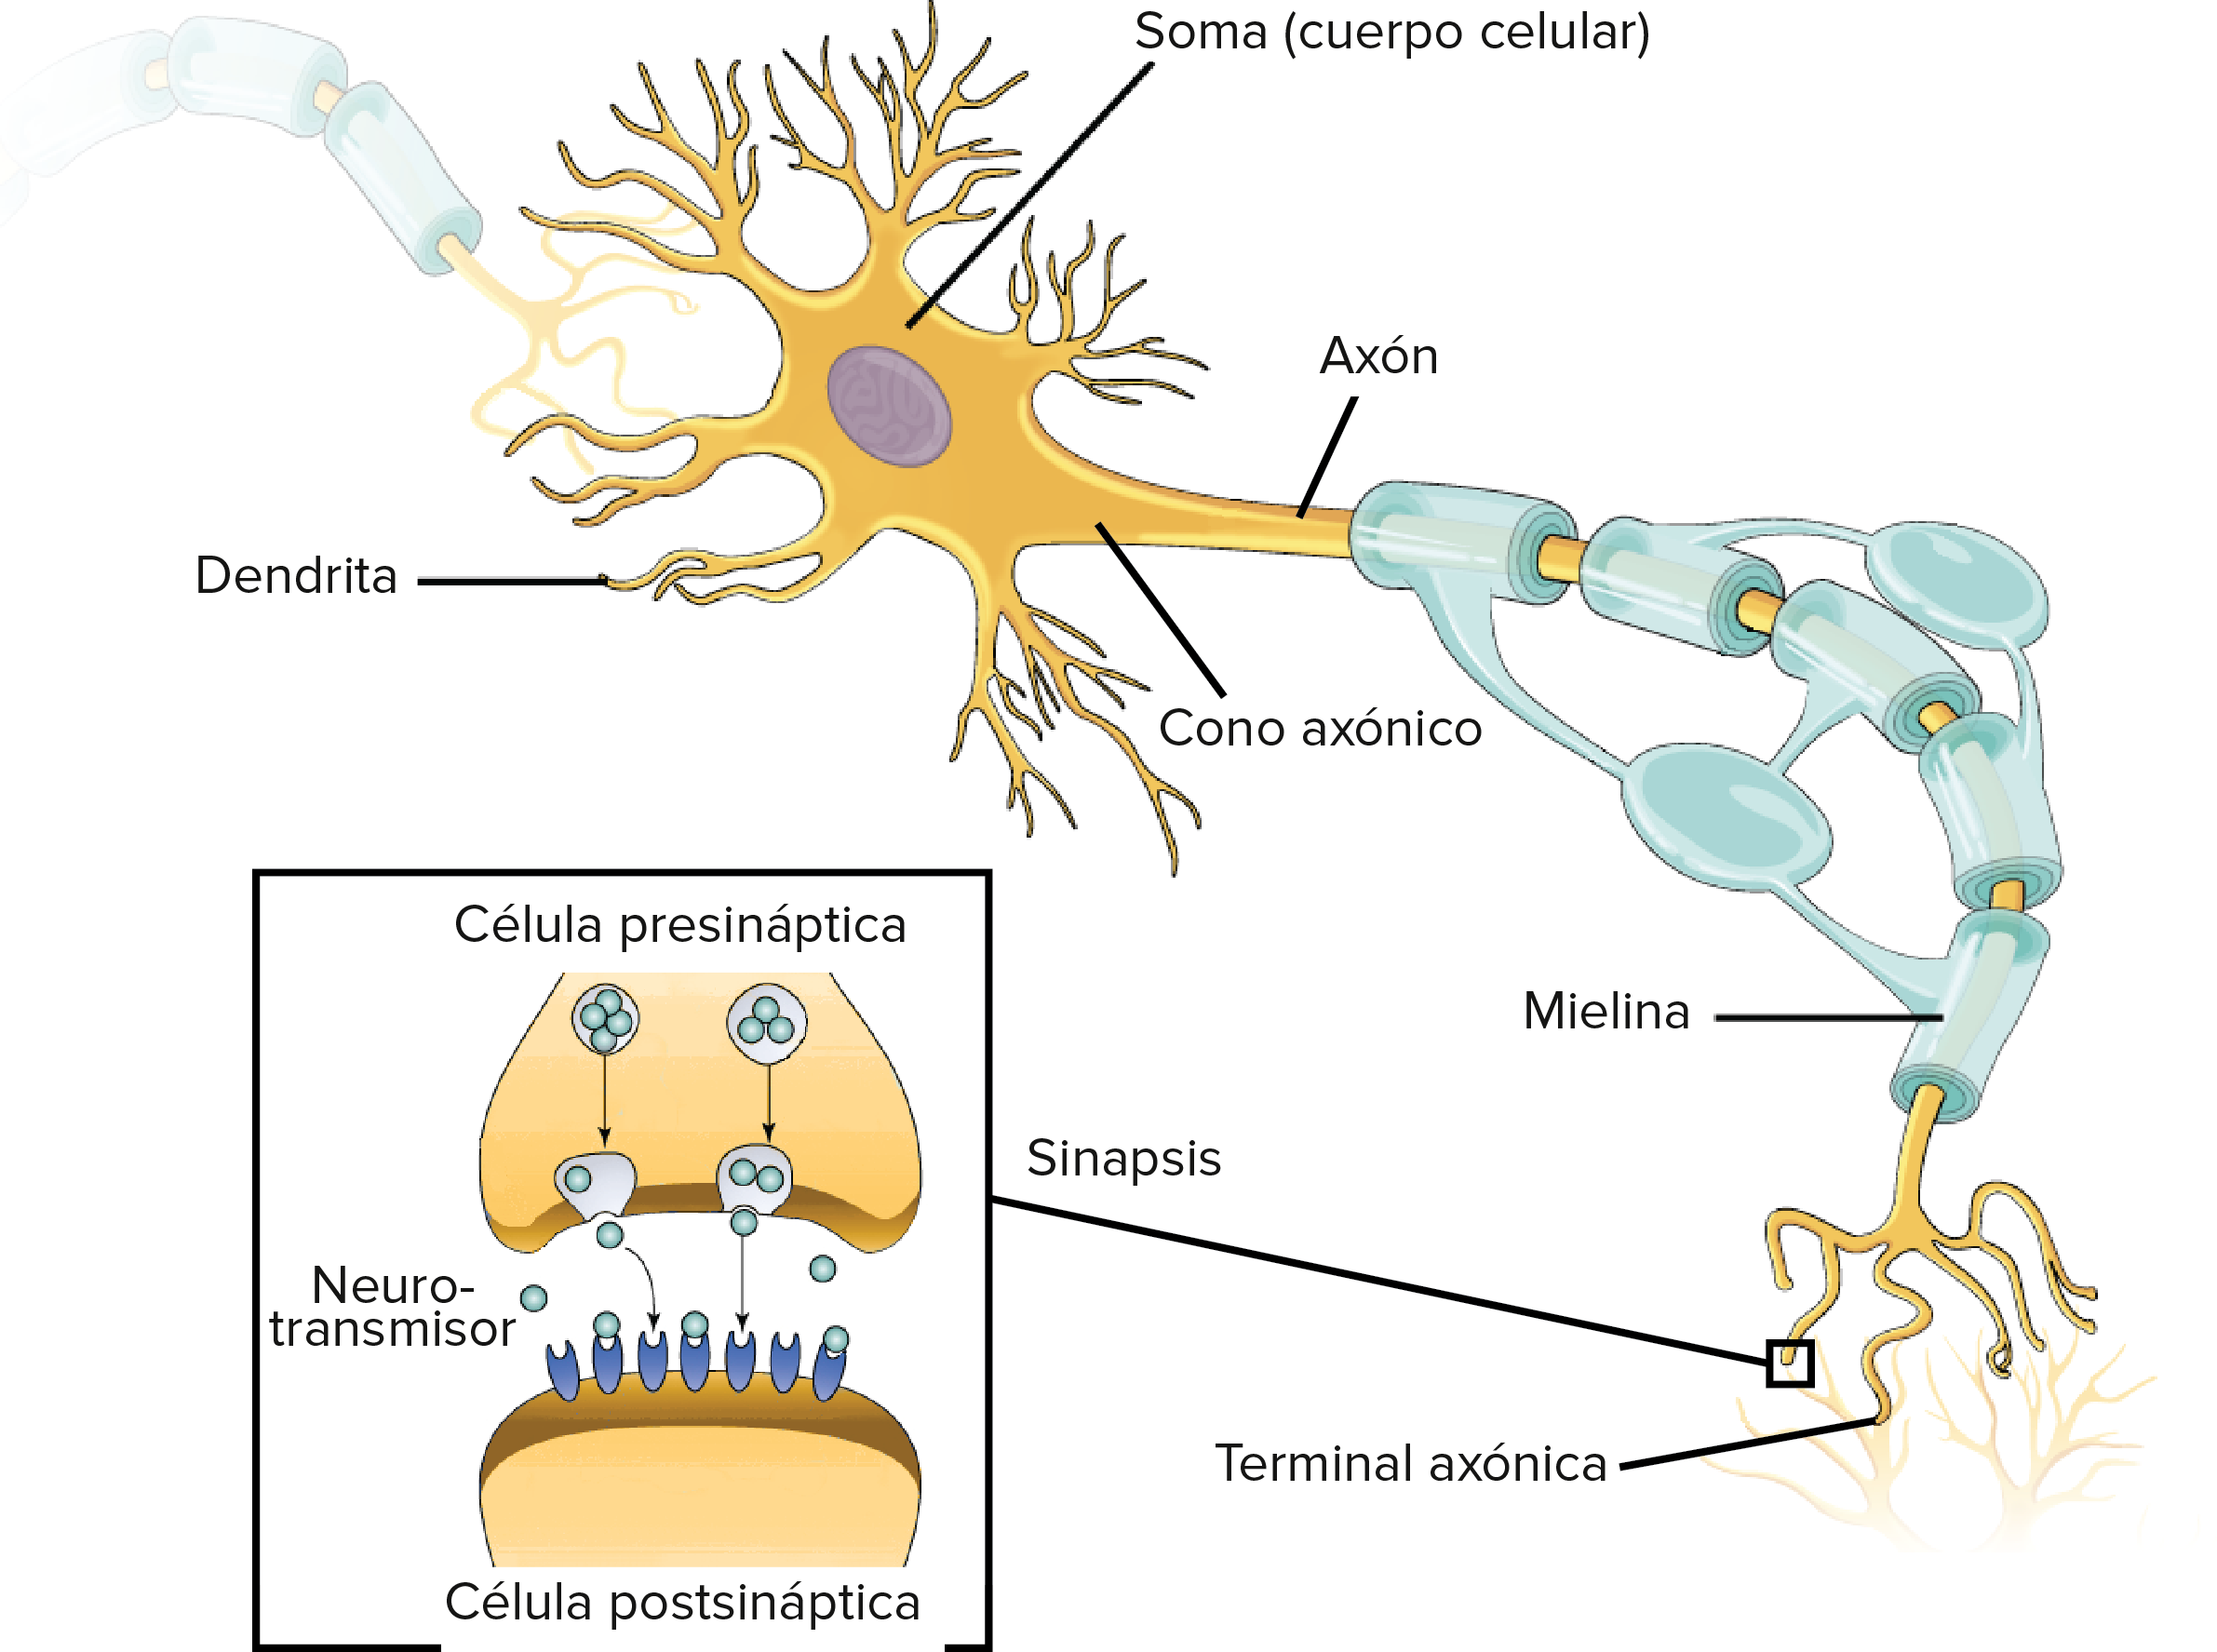 Diagrama de conexiones neuronales